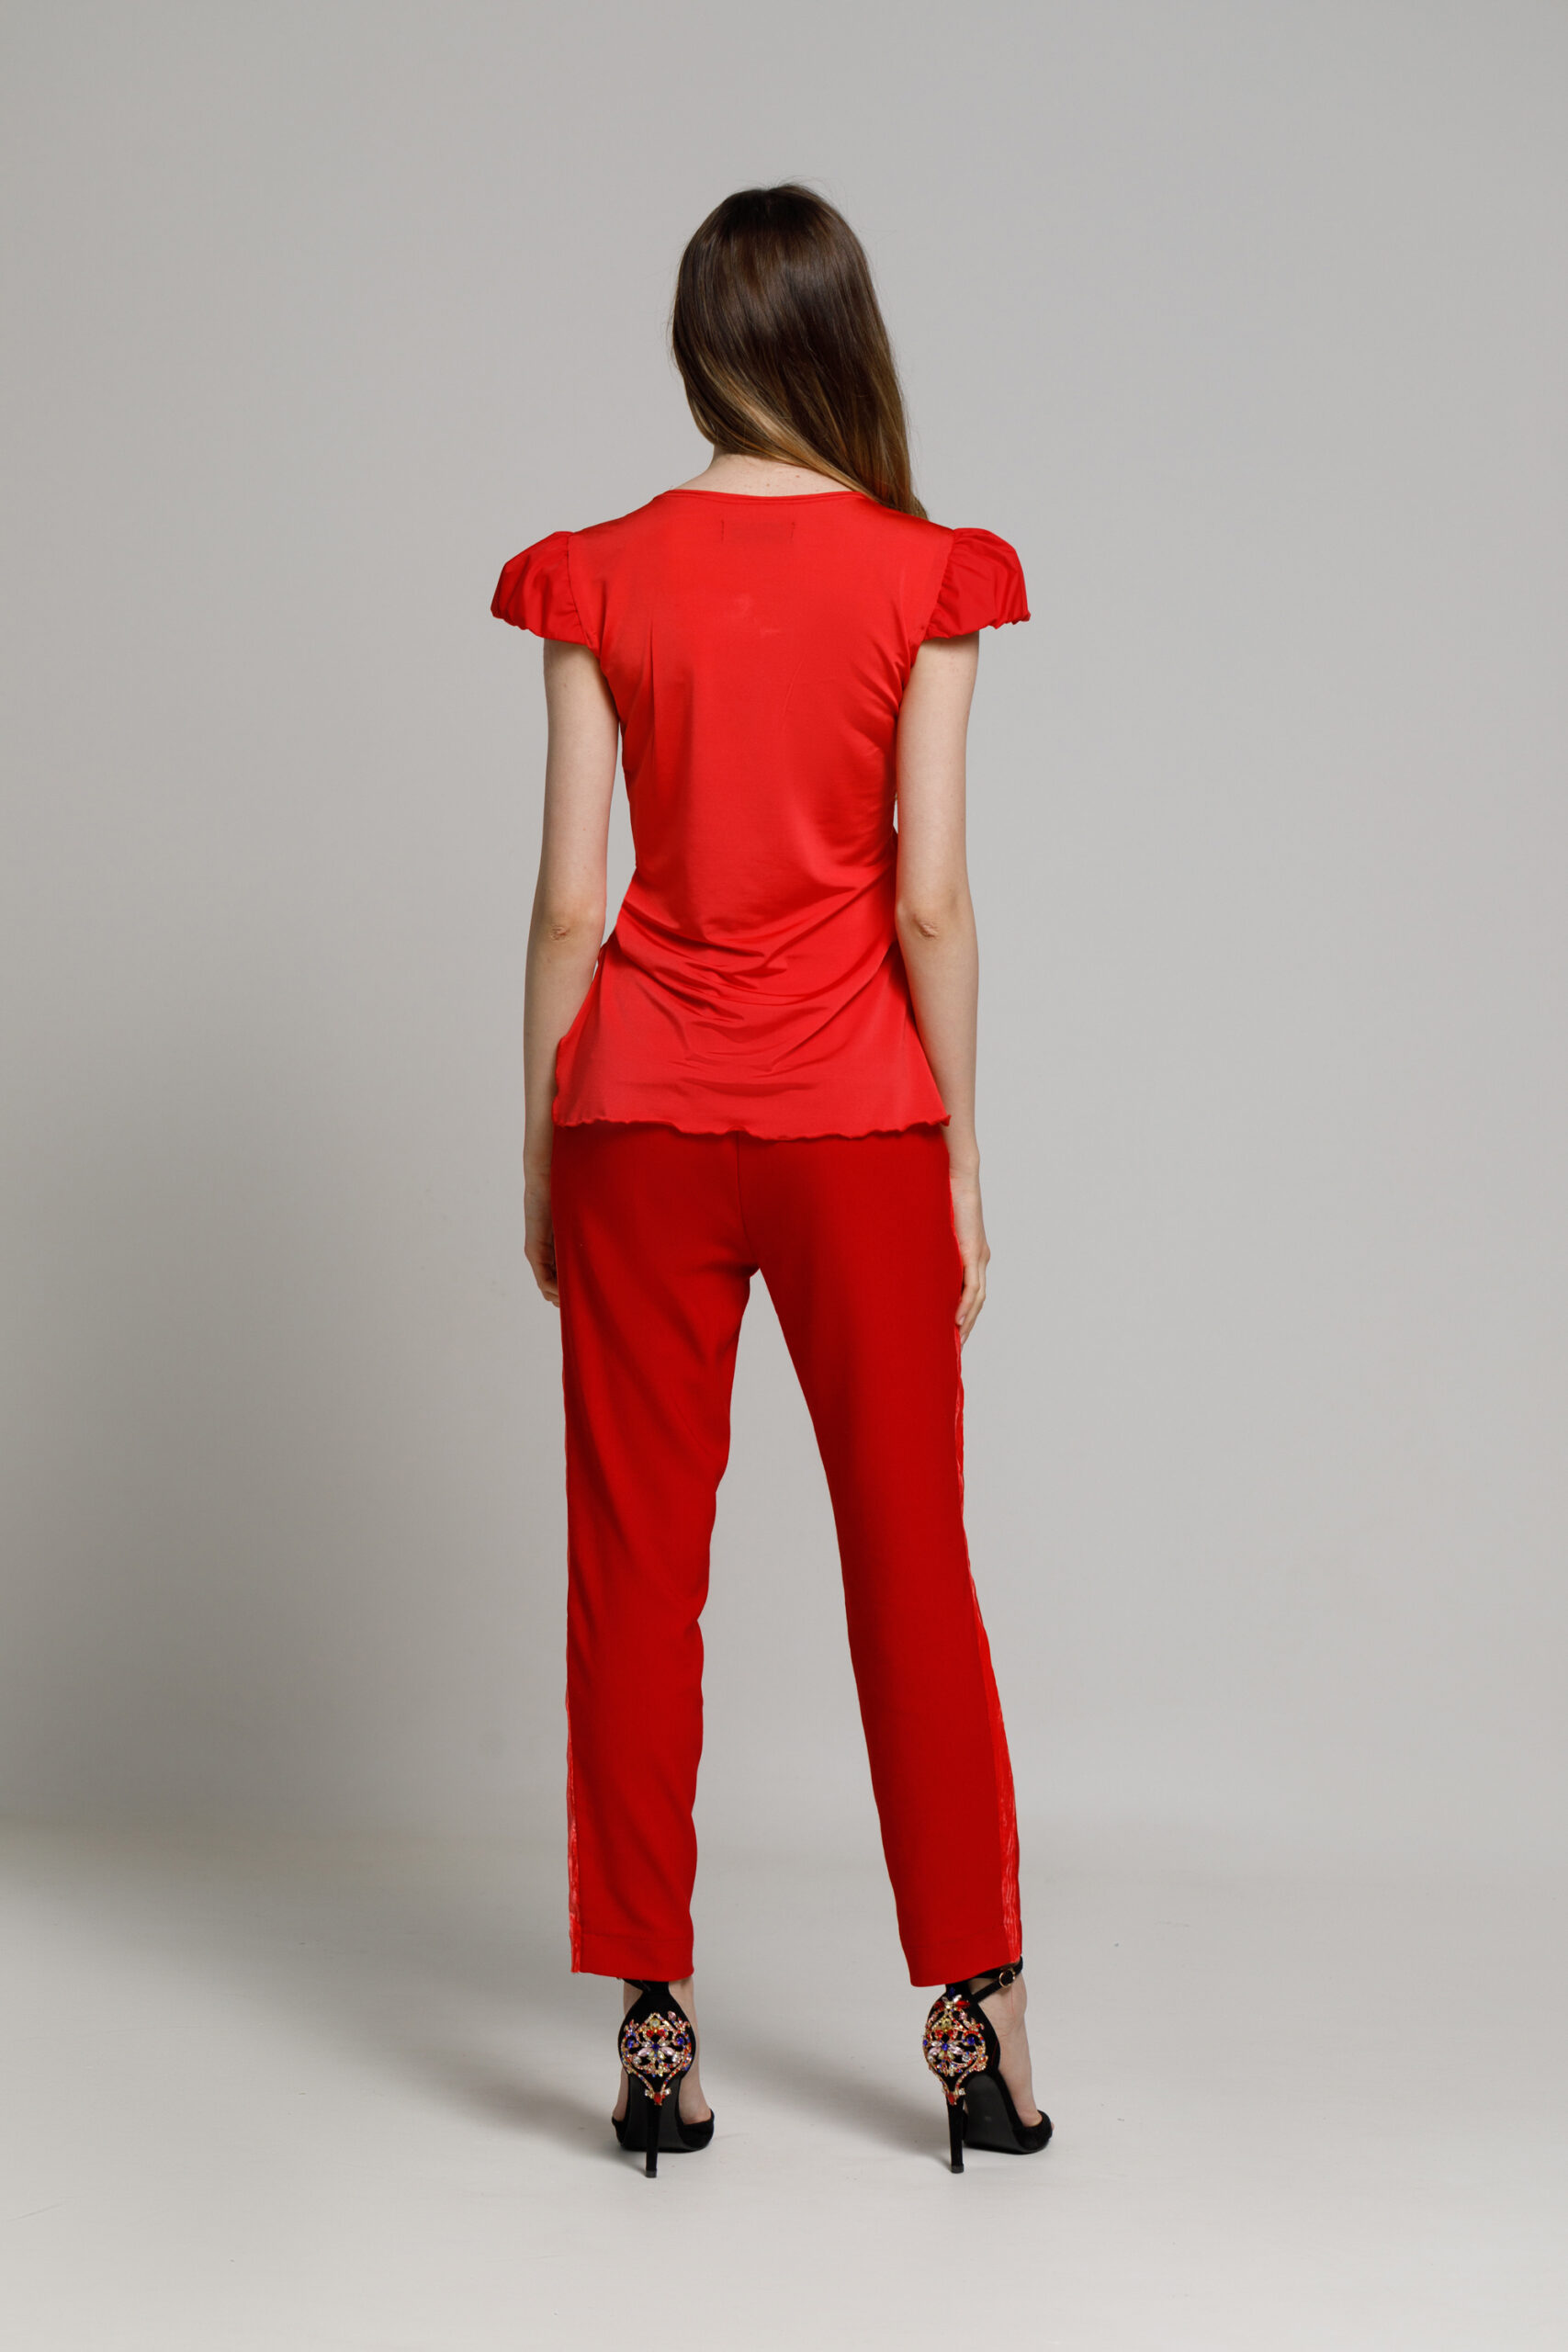 Pantalon FILIPO rosu cu banda laterala din catifea. Materiale naturale, design unicat, cu broderie si aplicatii handmade